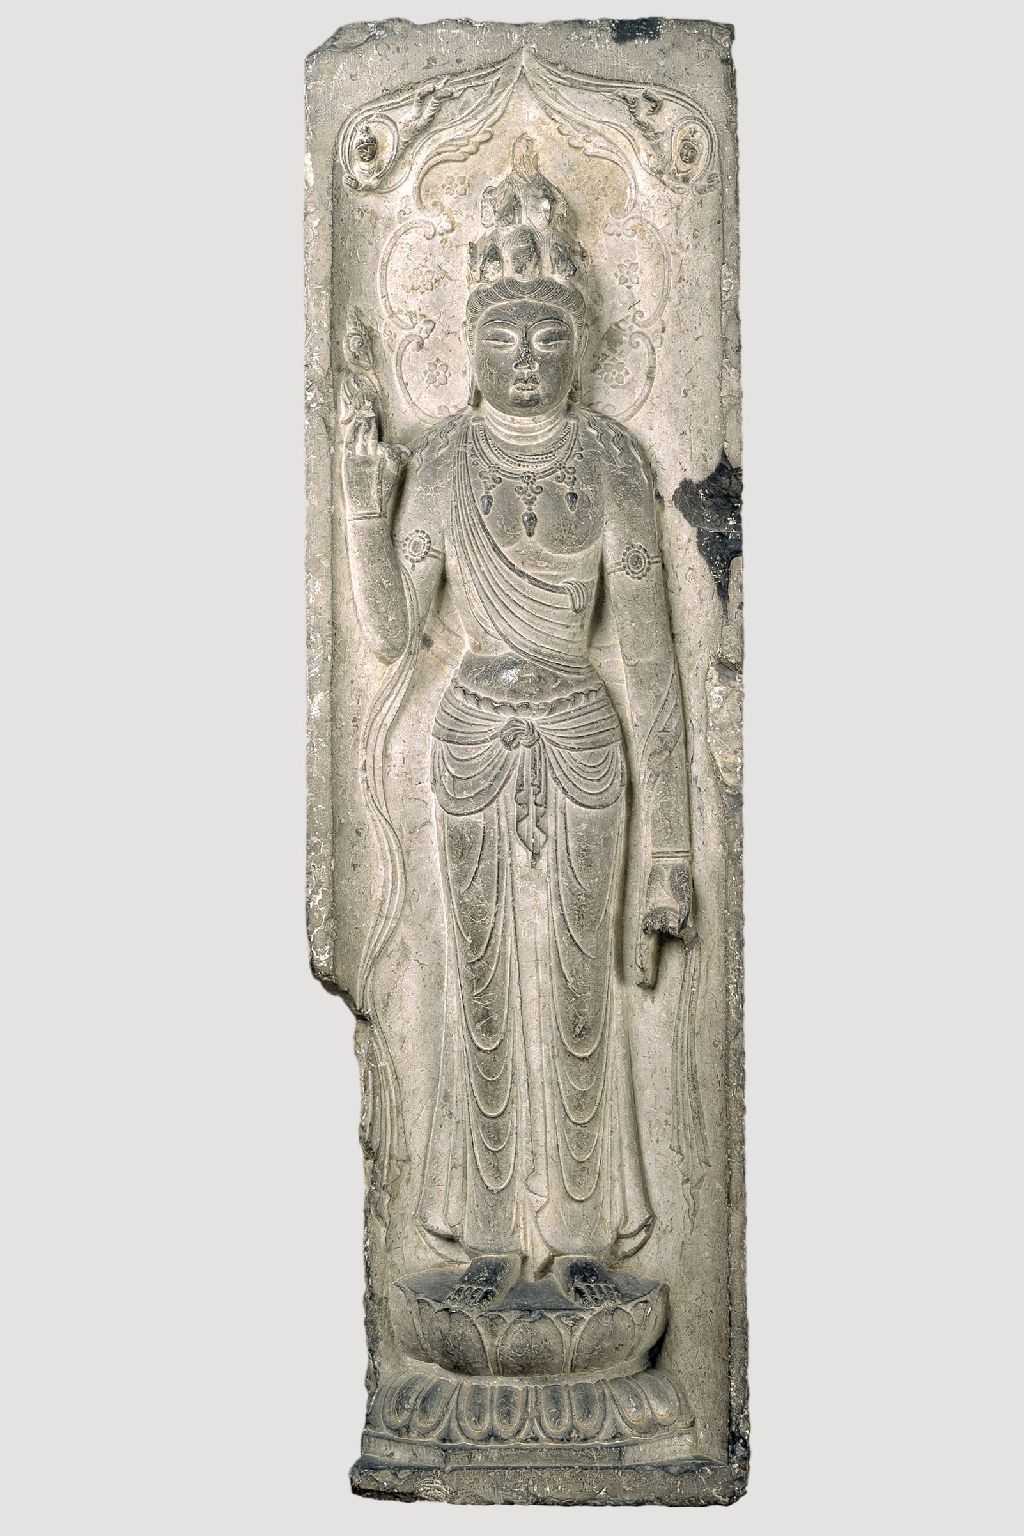 Miniature of Bodhisattva Avalokiteshvara (Guanyin) with 11 heads